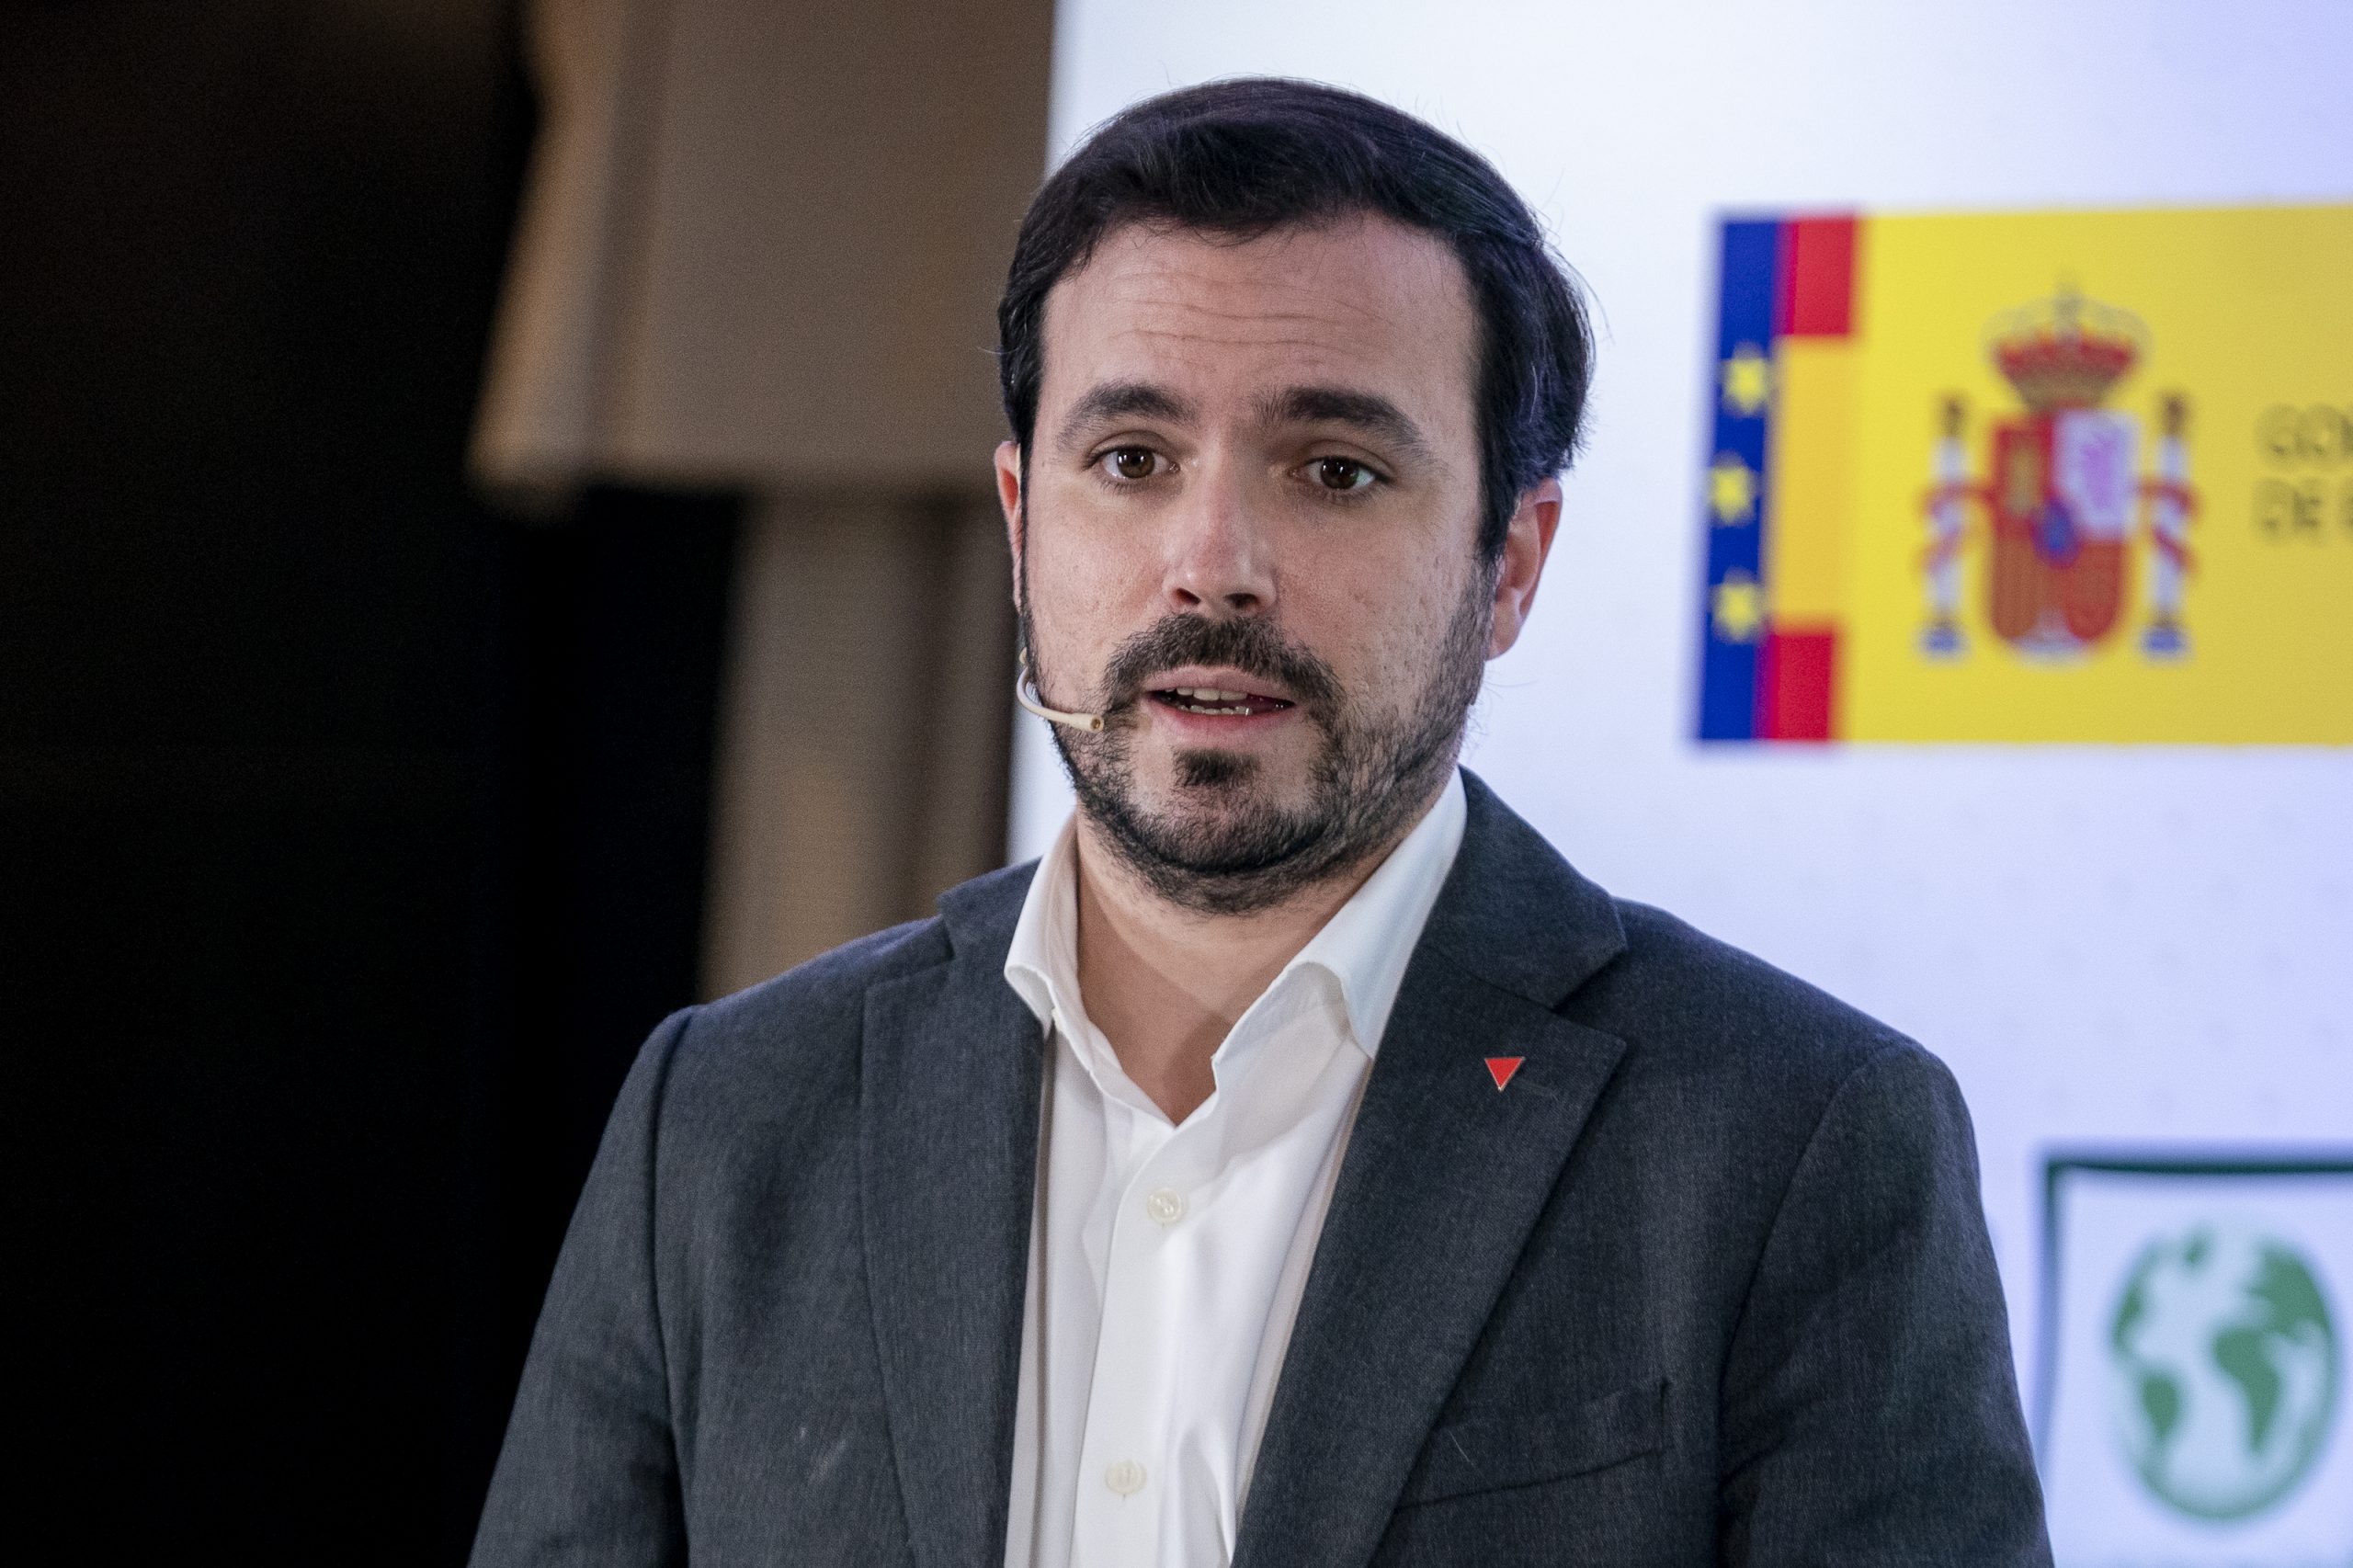 El hermano de Garzón reprocha a Sánchez «dar credibilidad a un bulo» tras las críticas al ministro